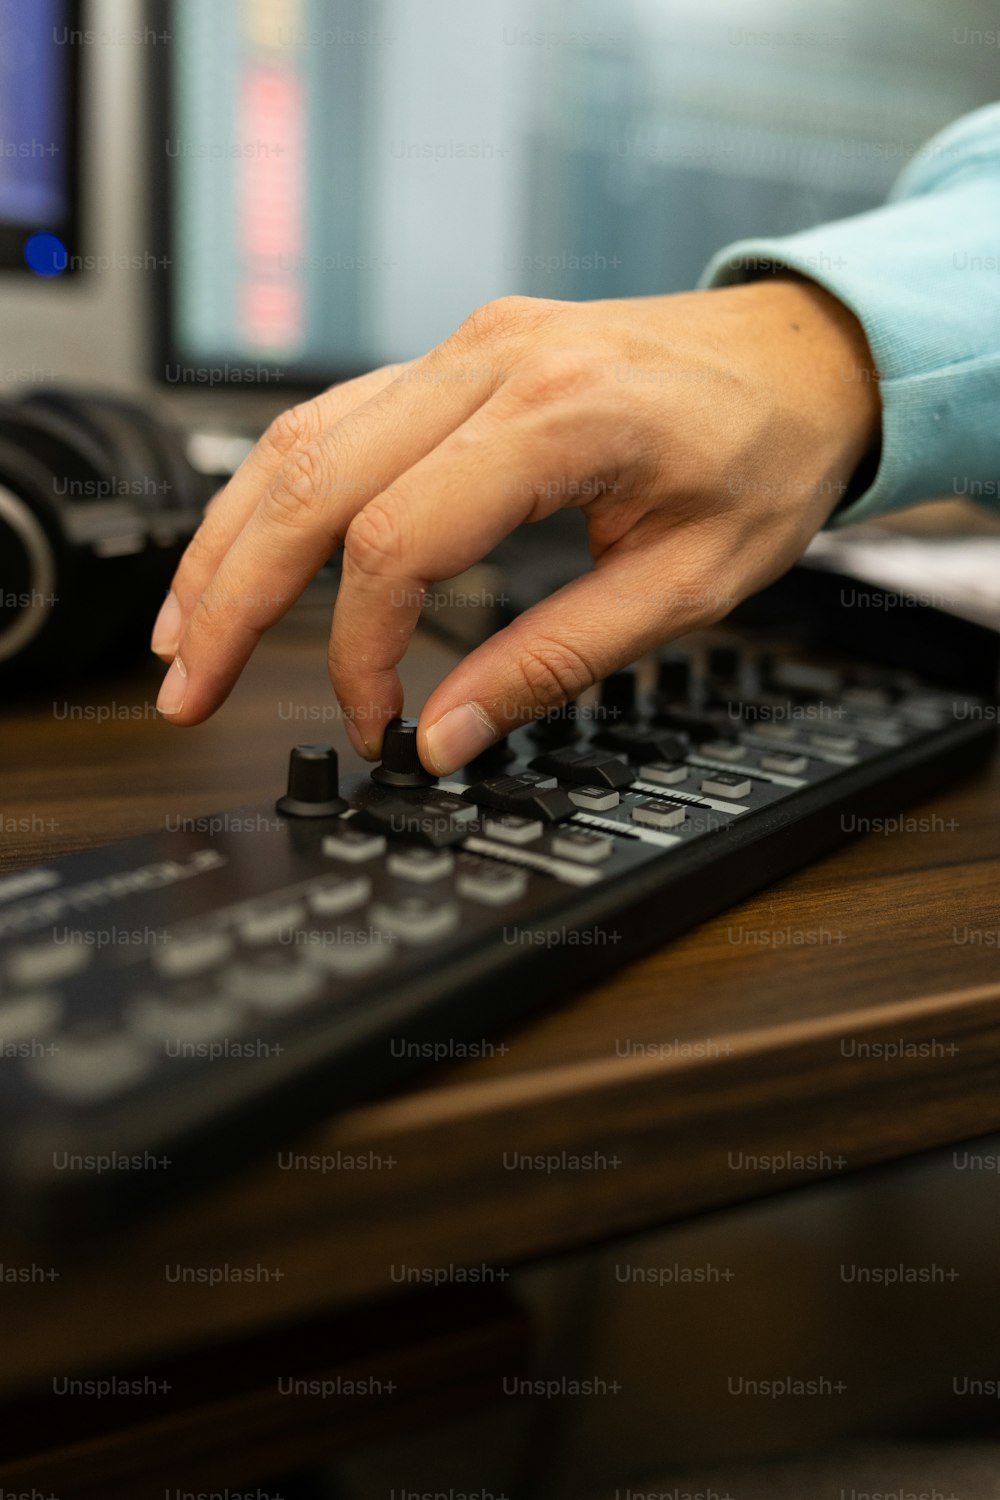 Una persona está presionando botones en un teclado